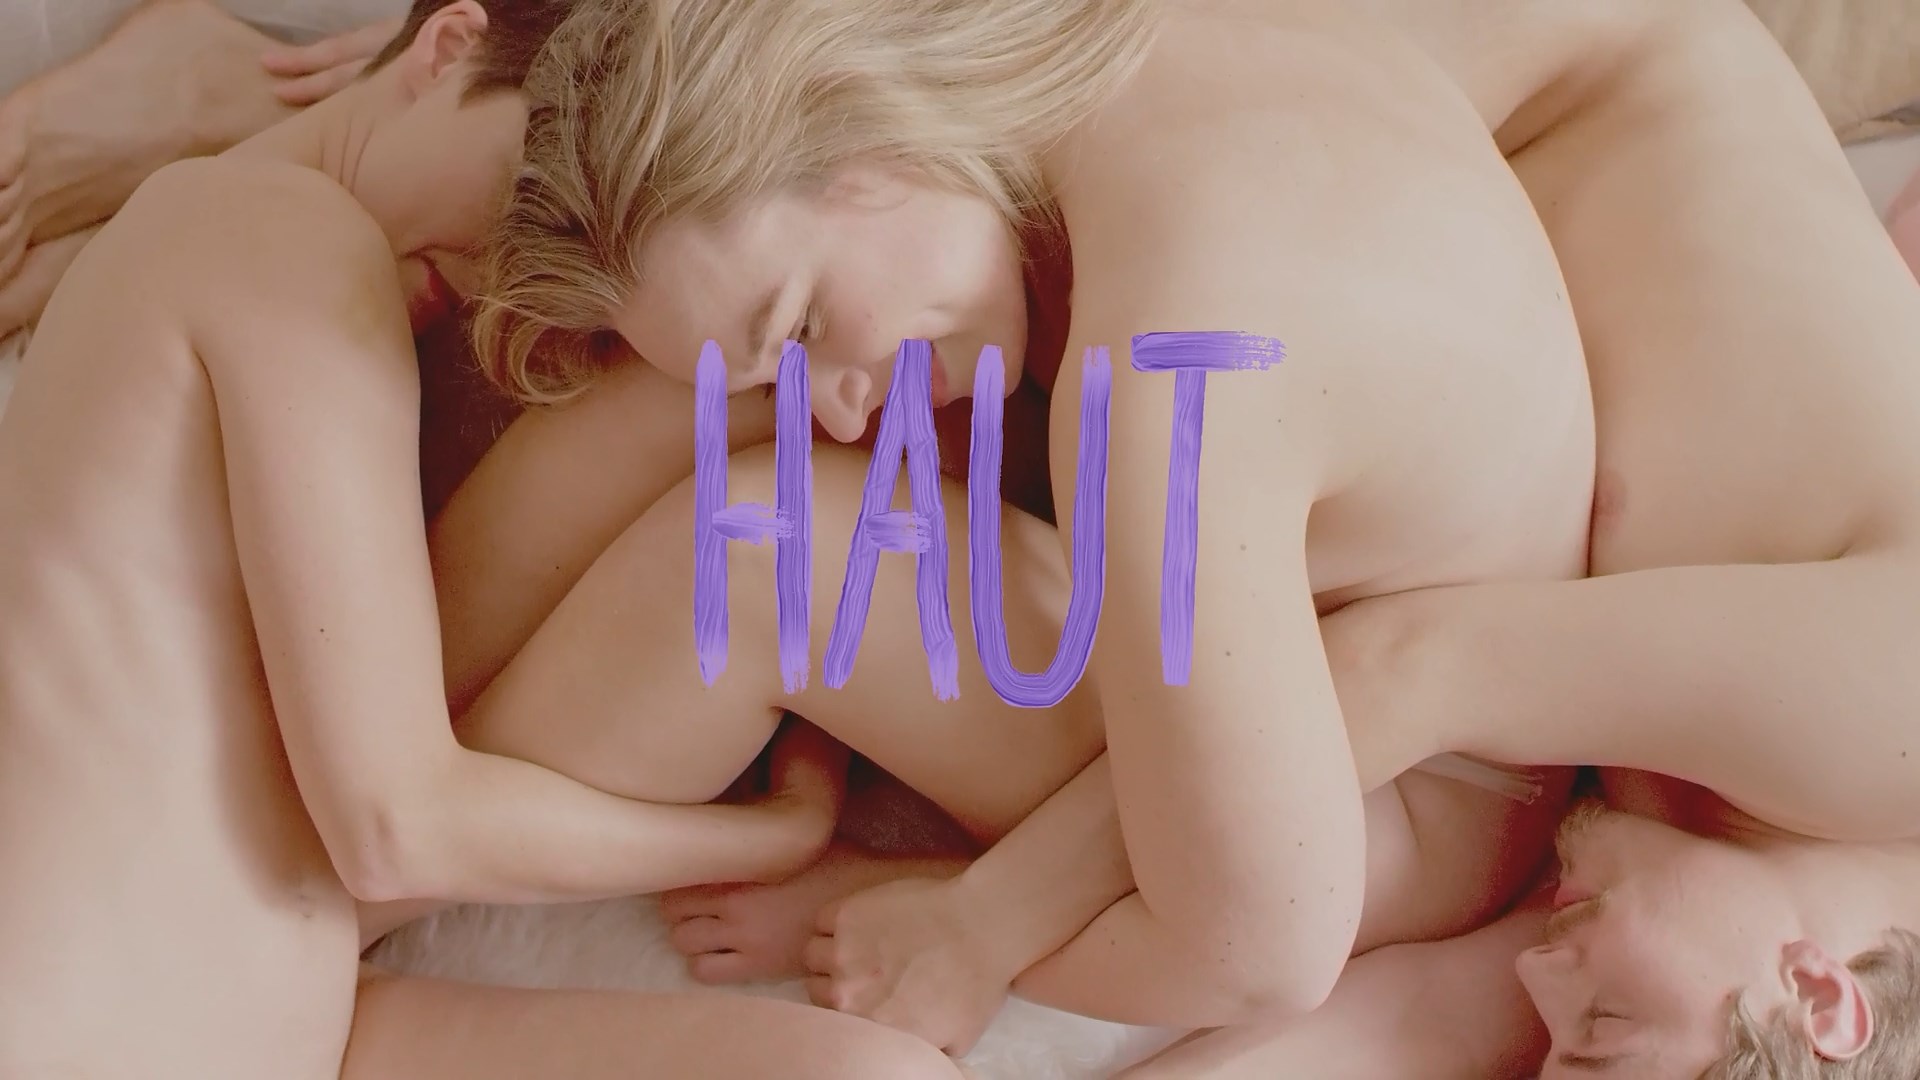 Watch Online - Nina Siewert, Mirjam Birkl, Lisa-Marie Hahn - Haut (2019) HD  1080p